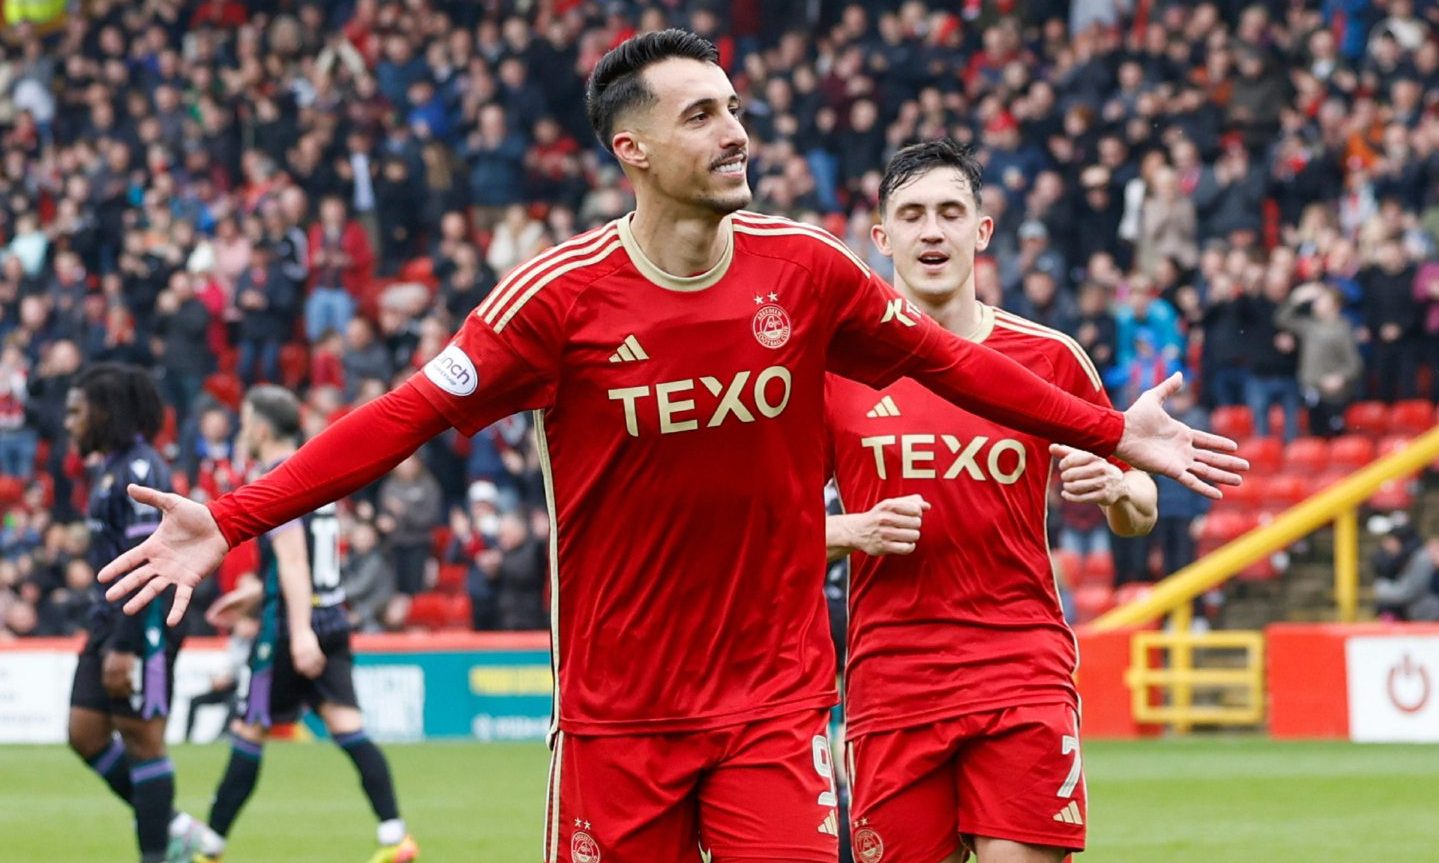 Miovski celebrates after scoring a penalty